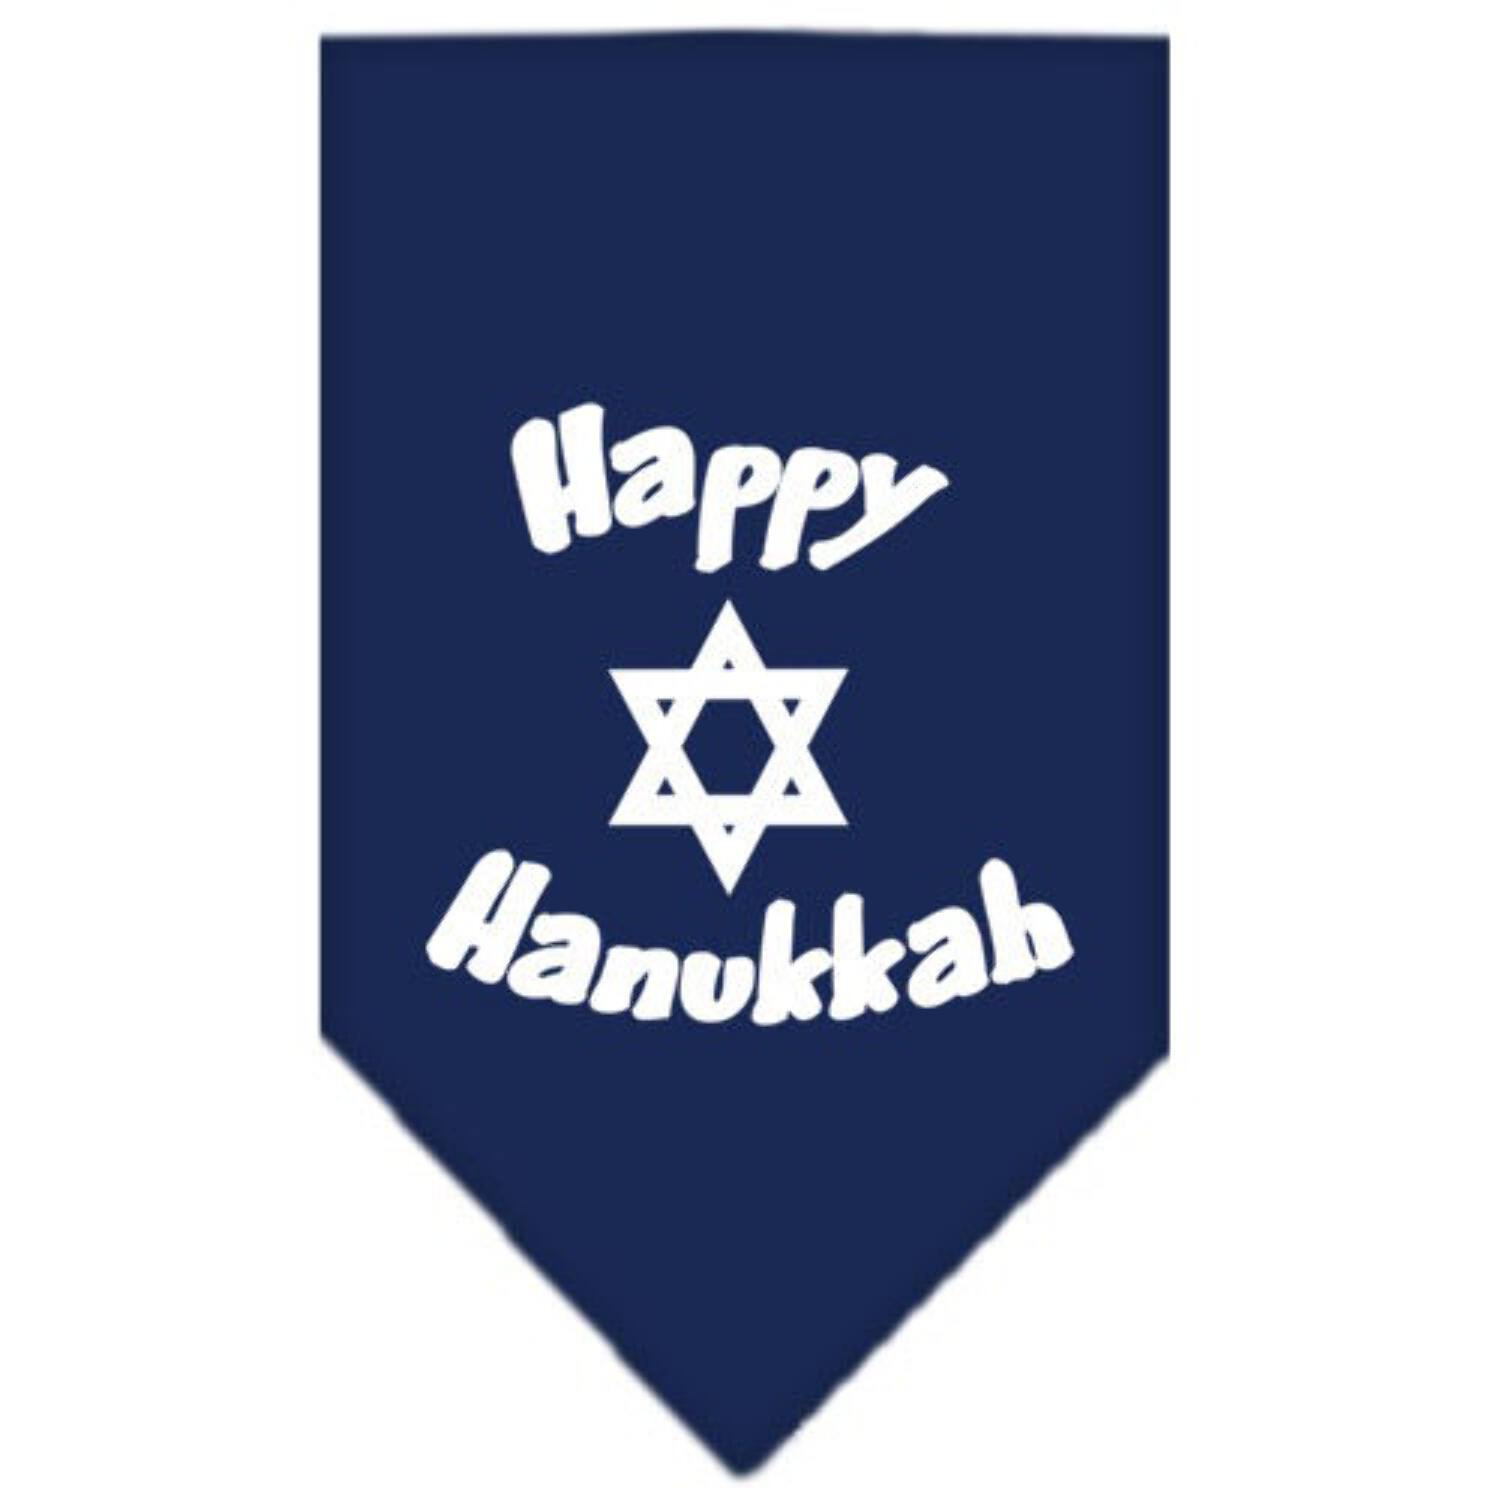 Happy Hanukkah Screen Print Bandana Navy Blue Small - image 3 of 10